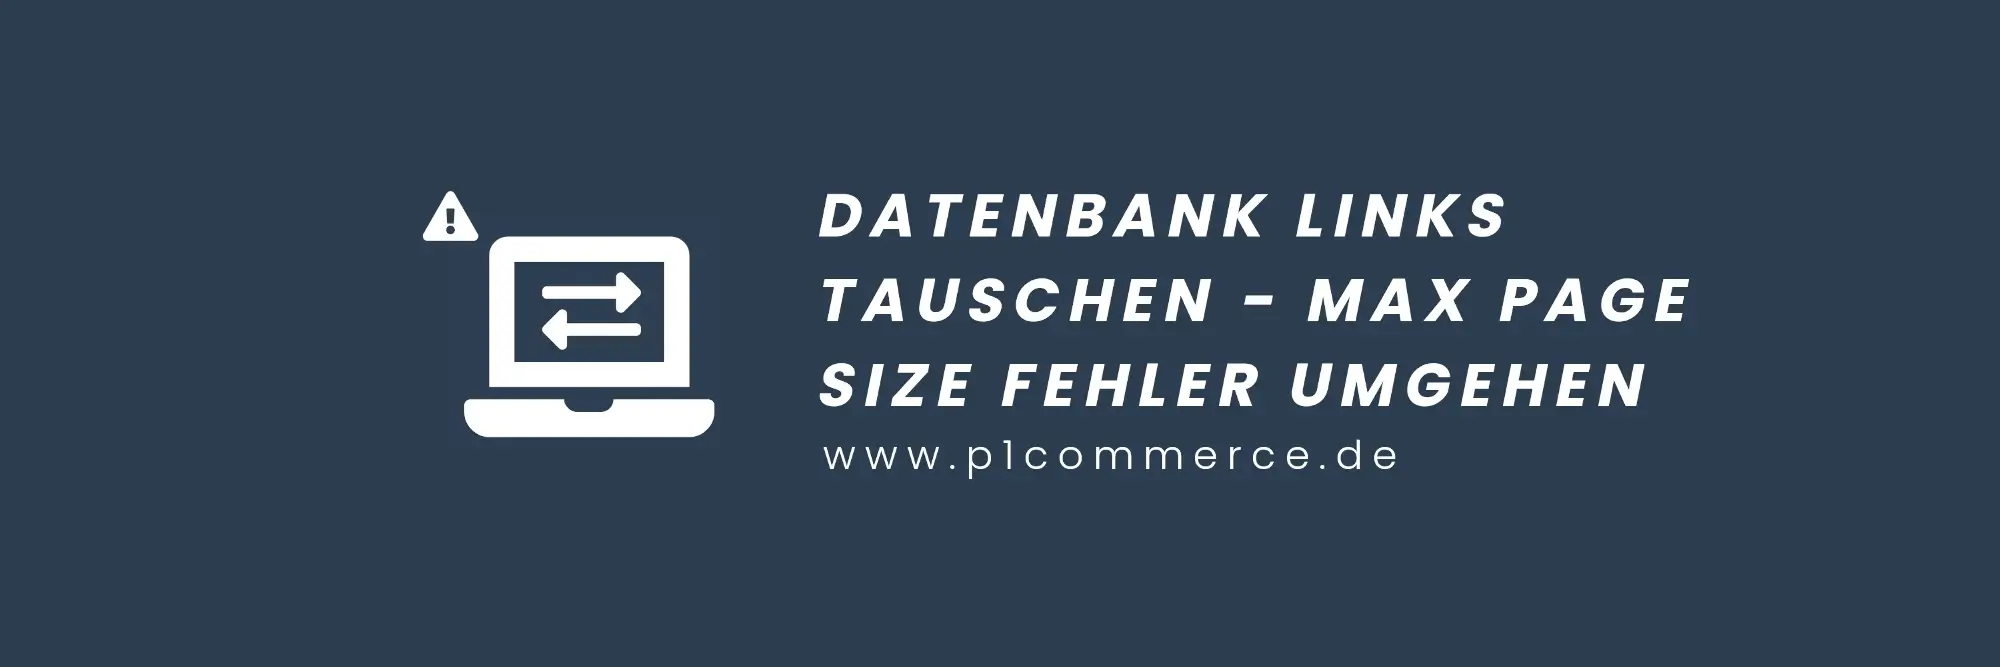 datenbank links tauschen better search replace